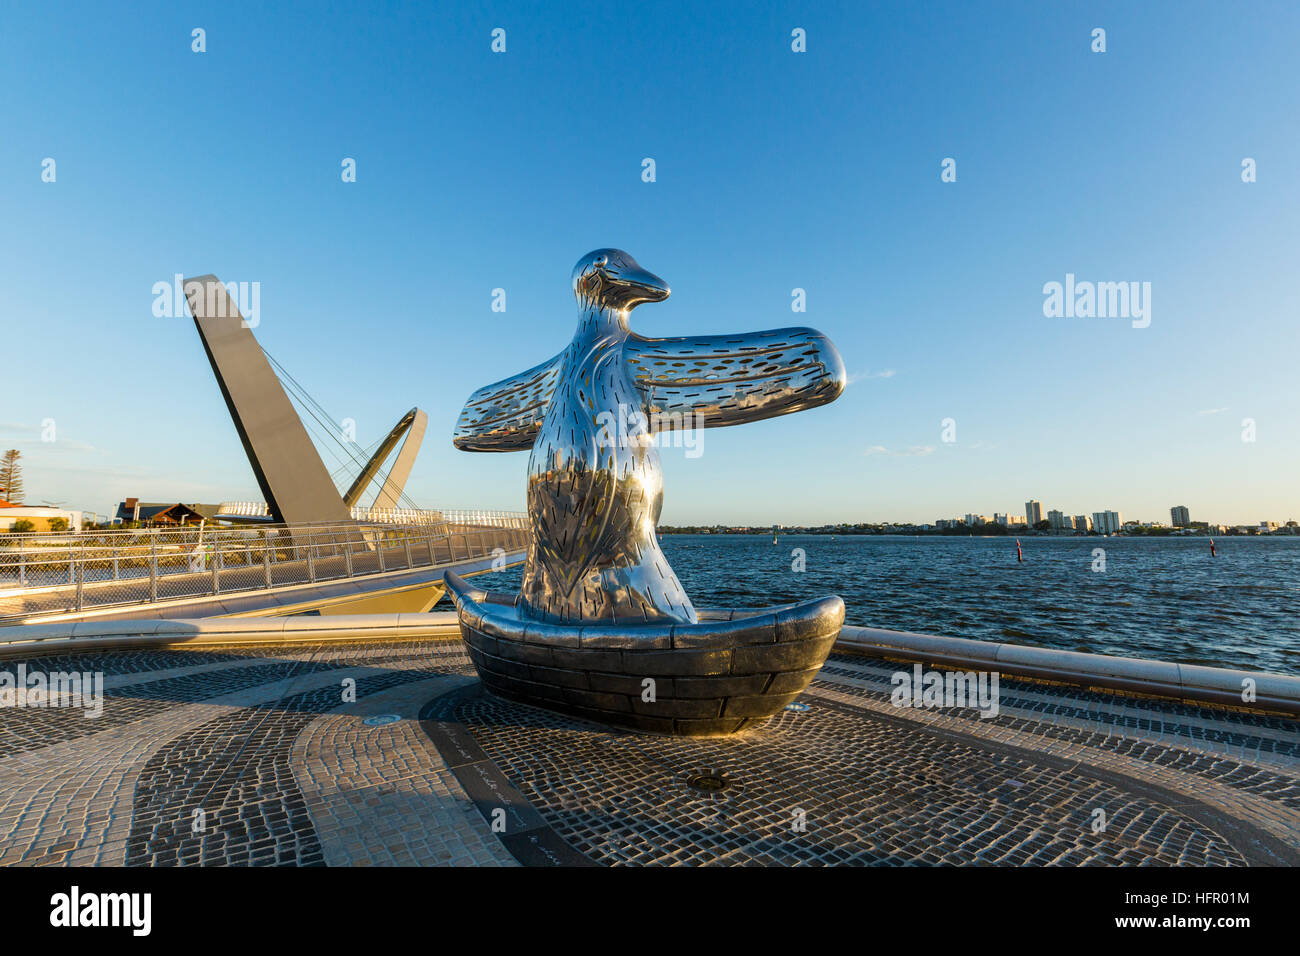 Le premier contact sculpture sur la rivière Swan avec le pont Elizabeth Quay au-delà. Perth, Western Australia, Australia Banque D'Images